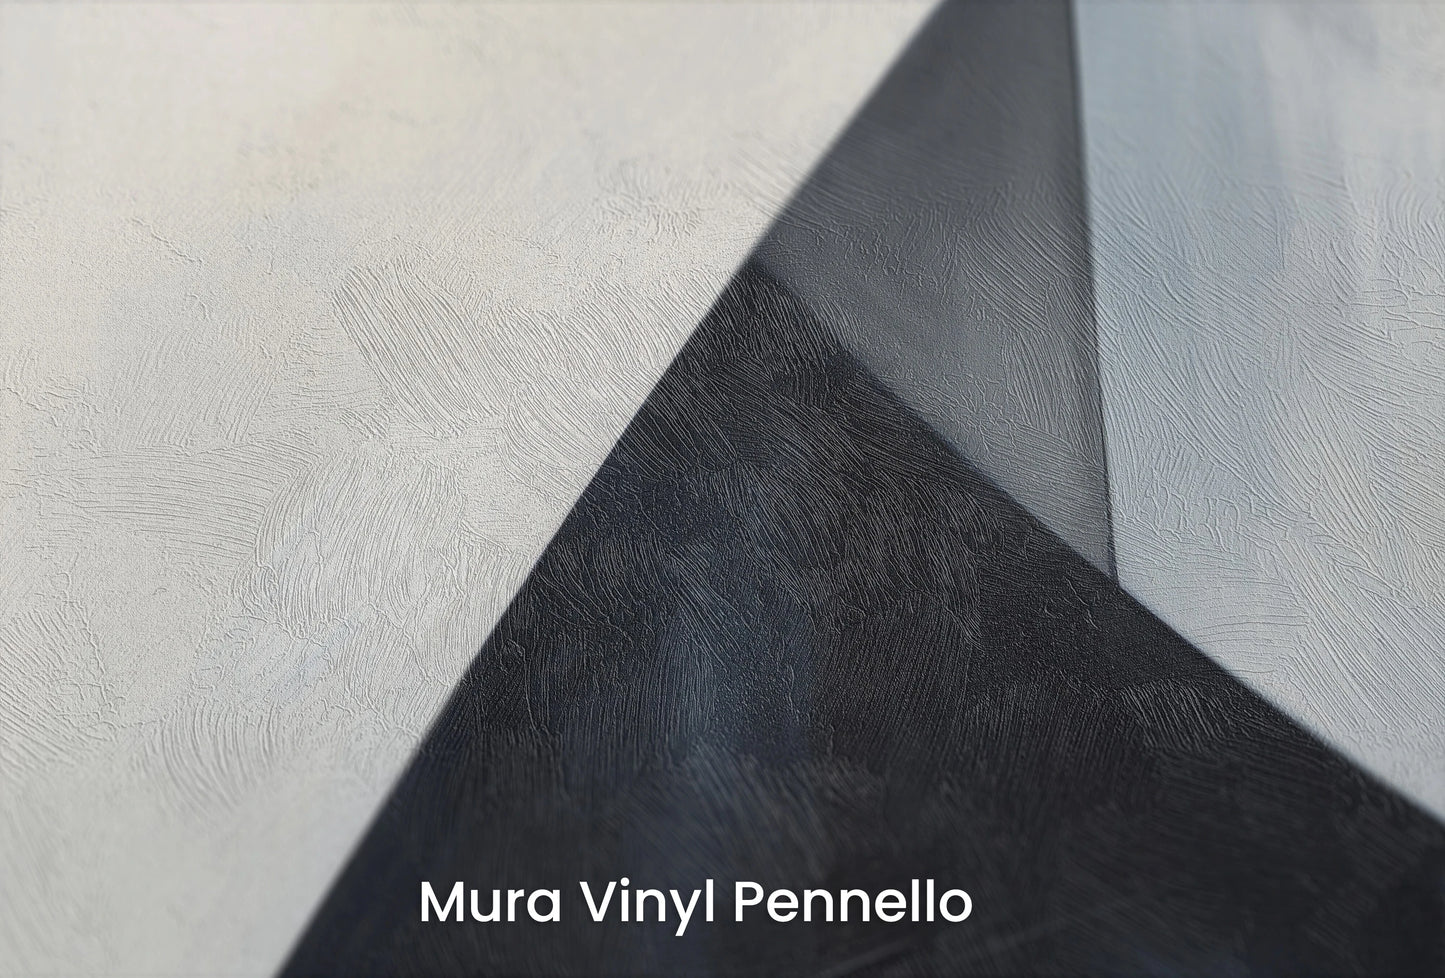 Zbliżenie na artystyczną fototapetę o nazwie Monochrome Triangle na podłożu Mura Vinyl Pennello - faktura pociągnięć pędzla malarskiego.